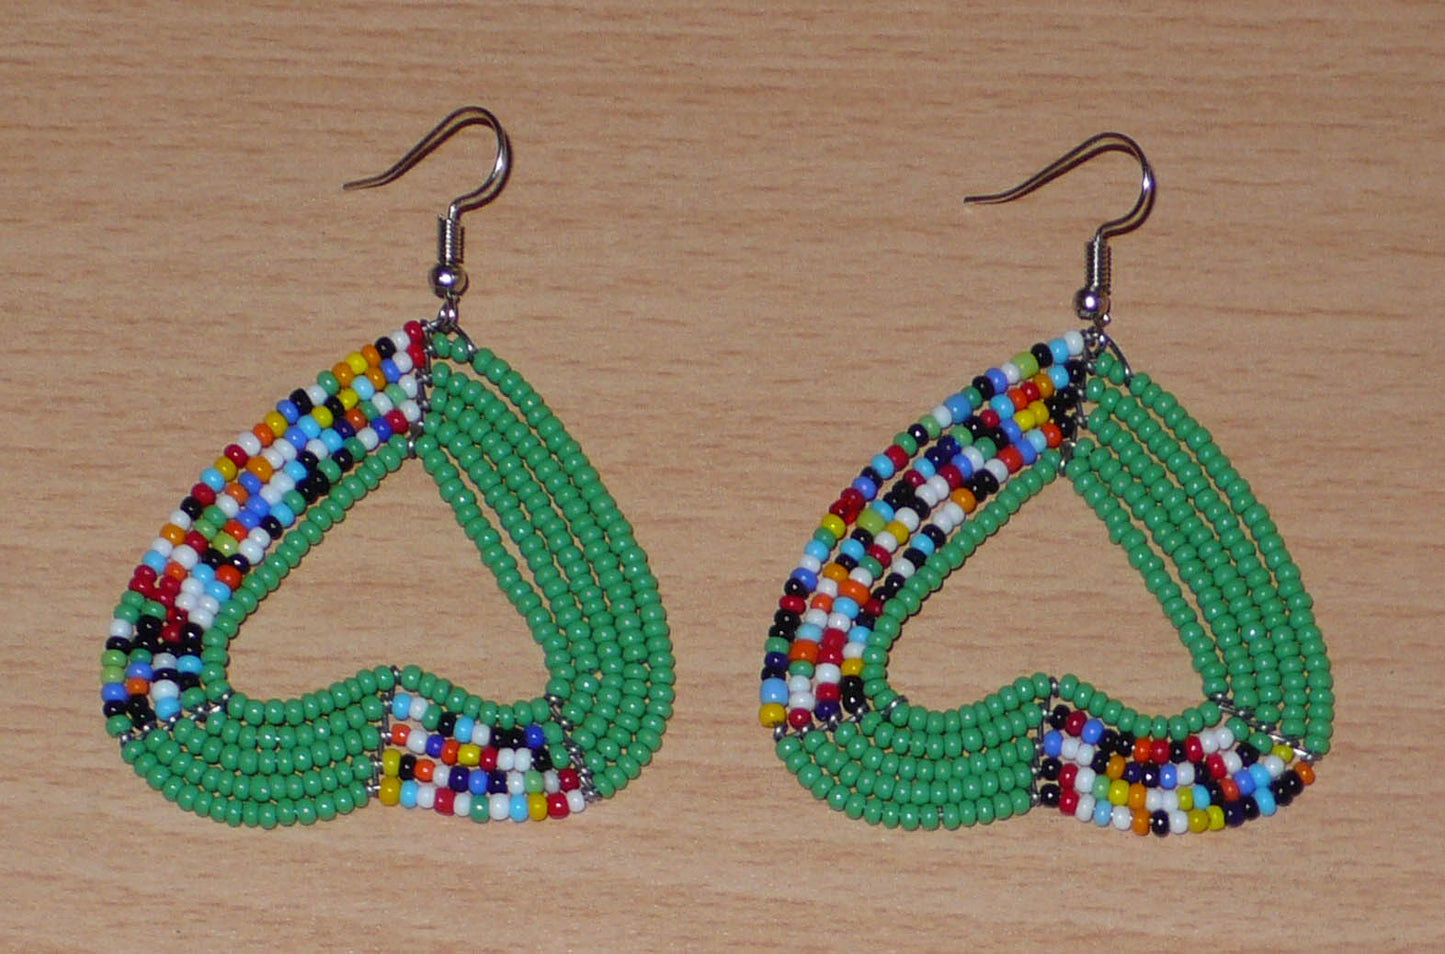 Boucles d'oreilles en forme de coeurs composées de perles vertes et multicolores. De taille moyennes, elles mesurent 6,5 cm de long et 5 cm de large.